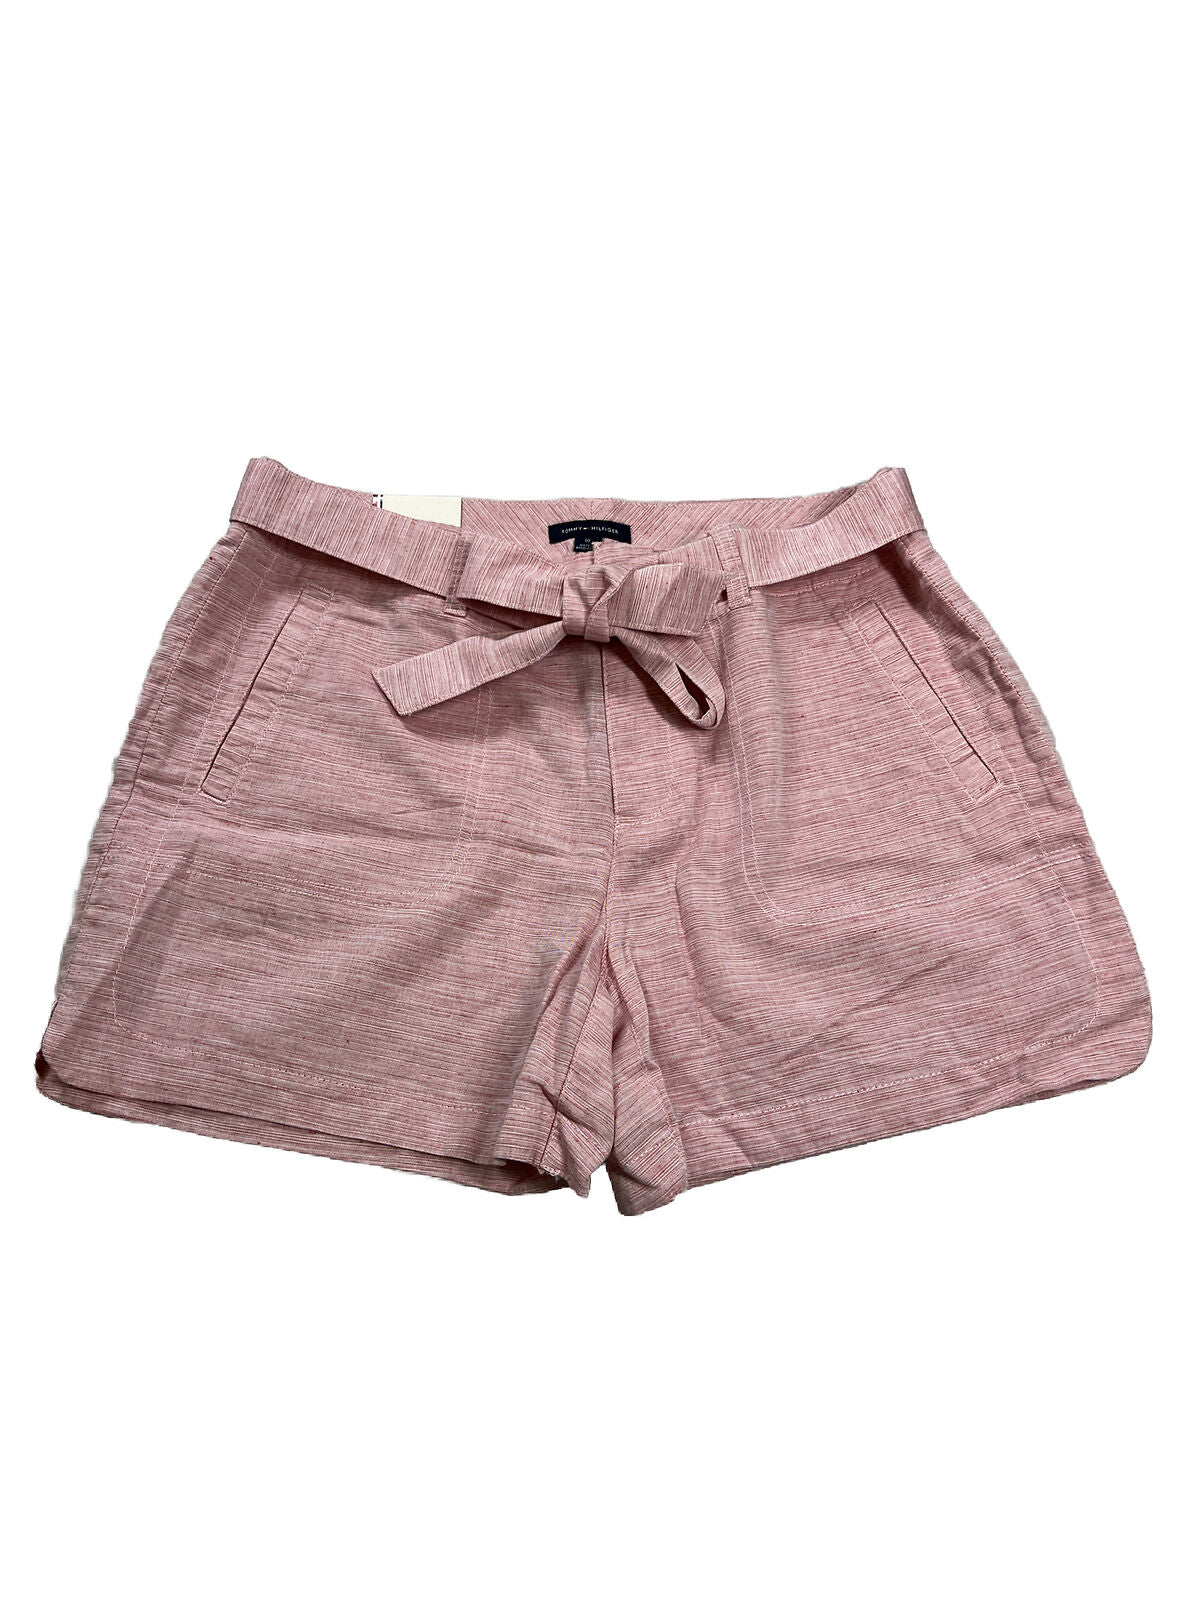 NUEVO Tommy Hilfiger Pantalones cortos casuales de lino rojo para mujer - 10